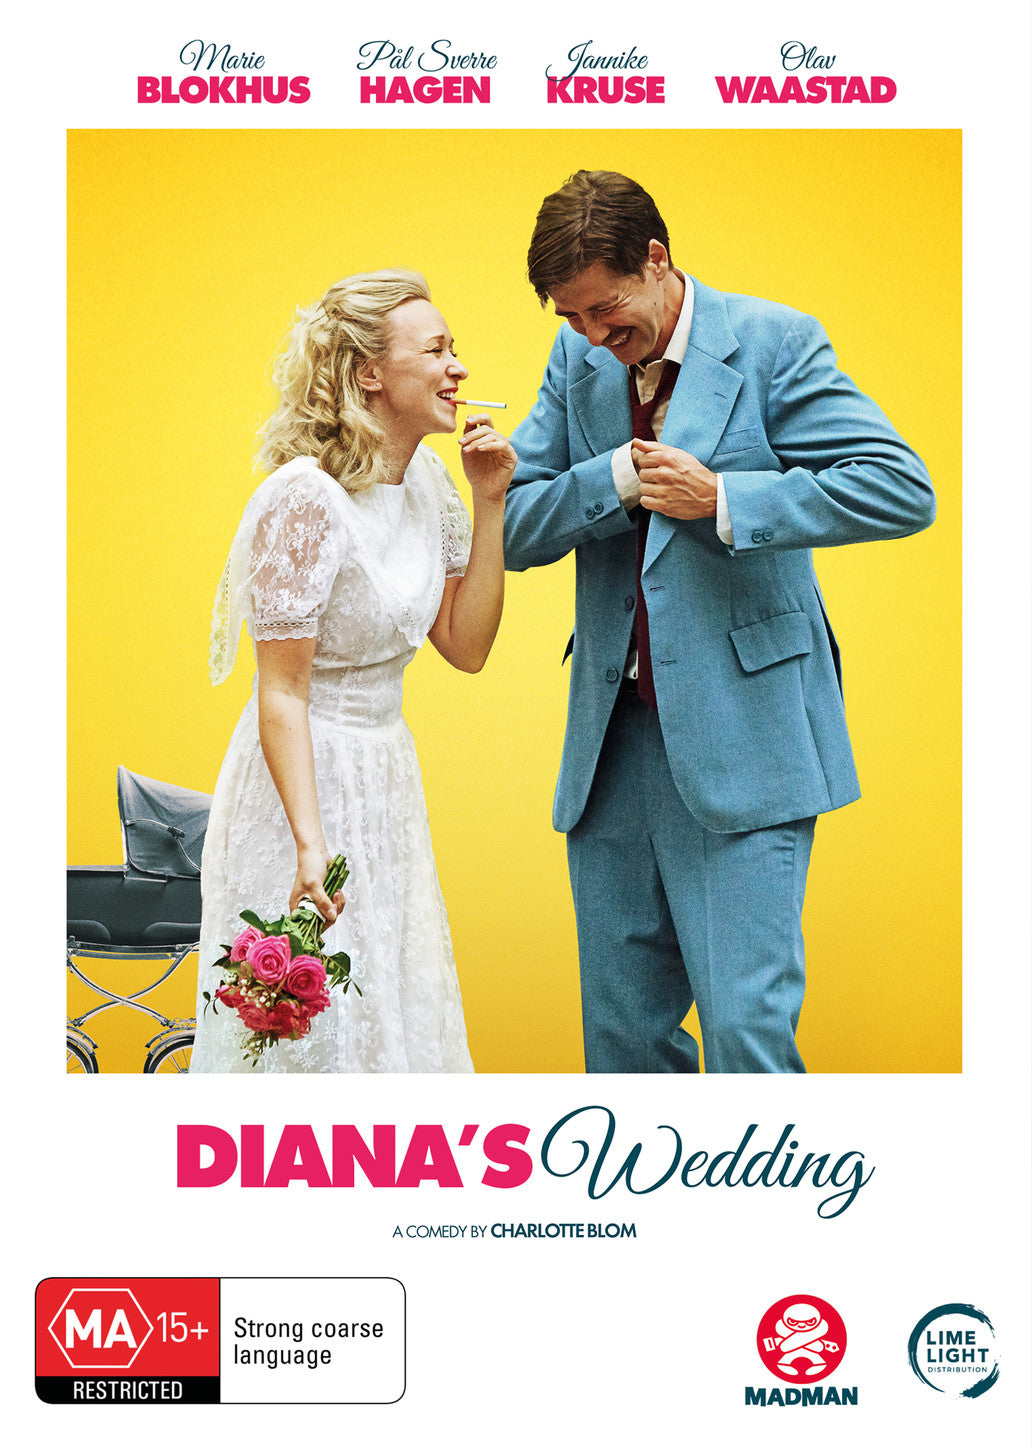 DIANA'S WEDDING